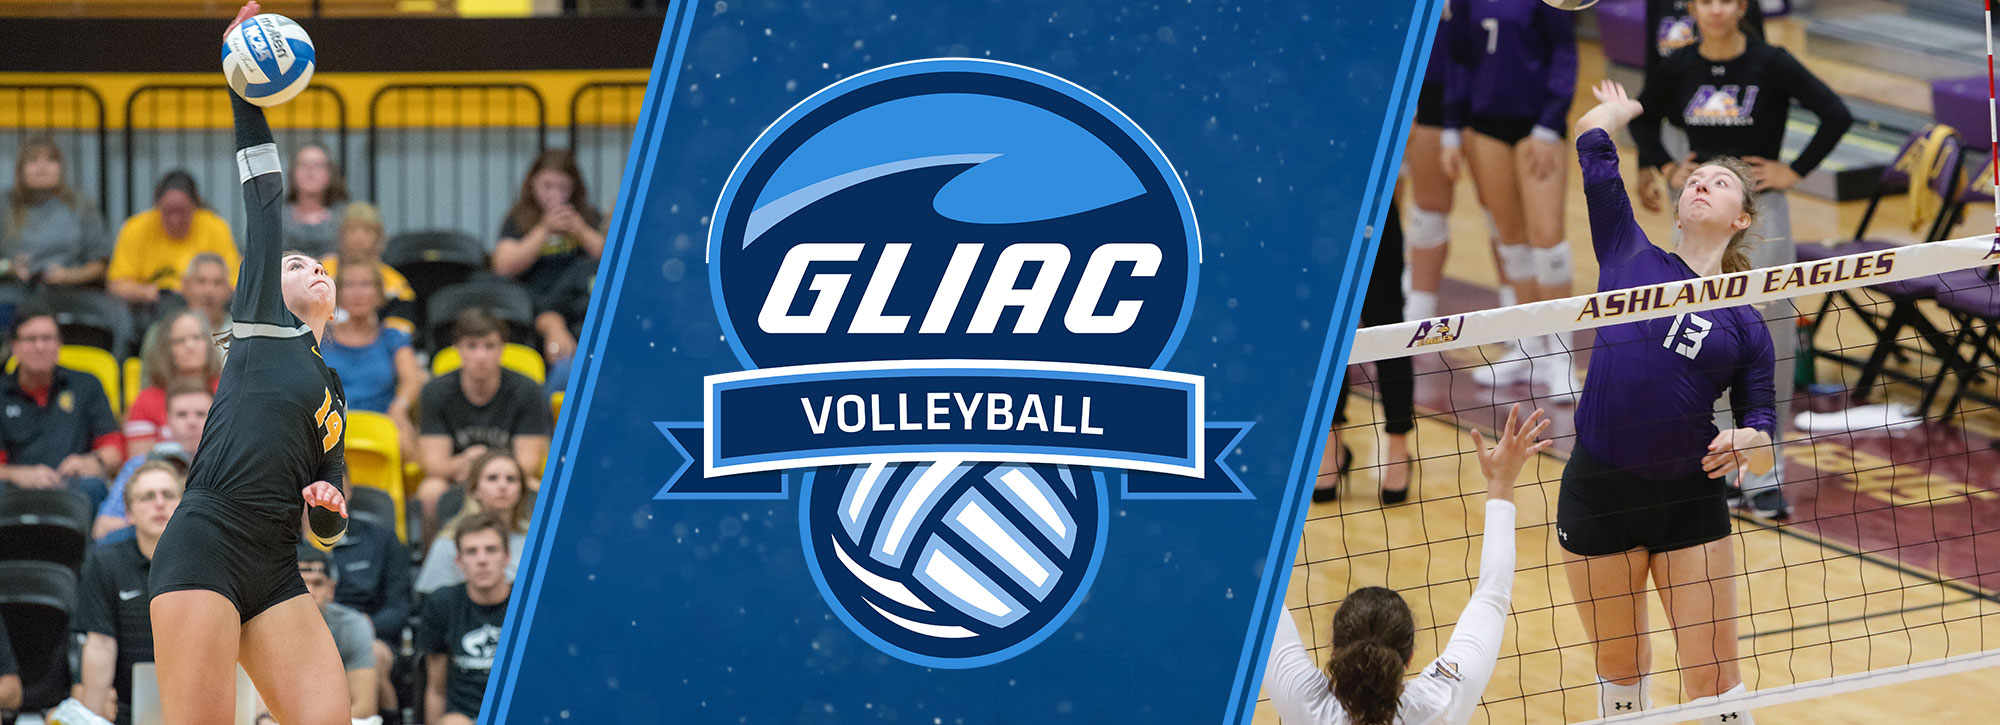 Michigan Tech's Ghormley, Ashland's Cudworth Garner GLIAC Volleyball Weekly Honors